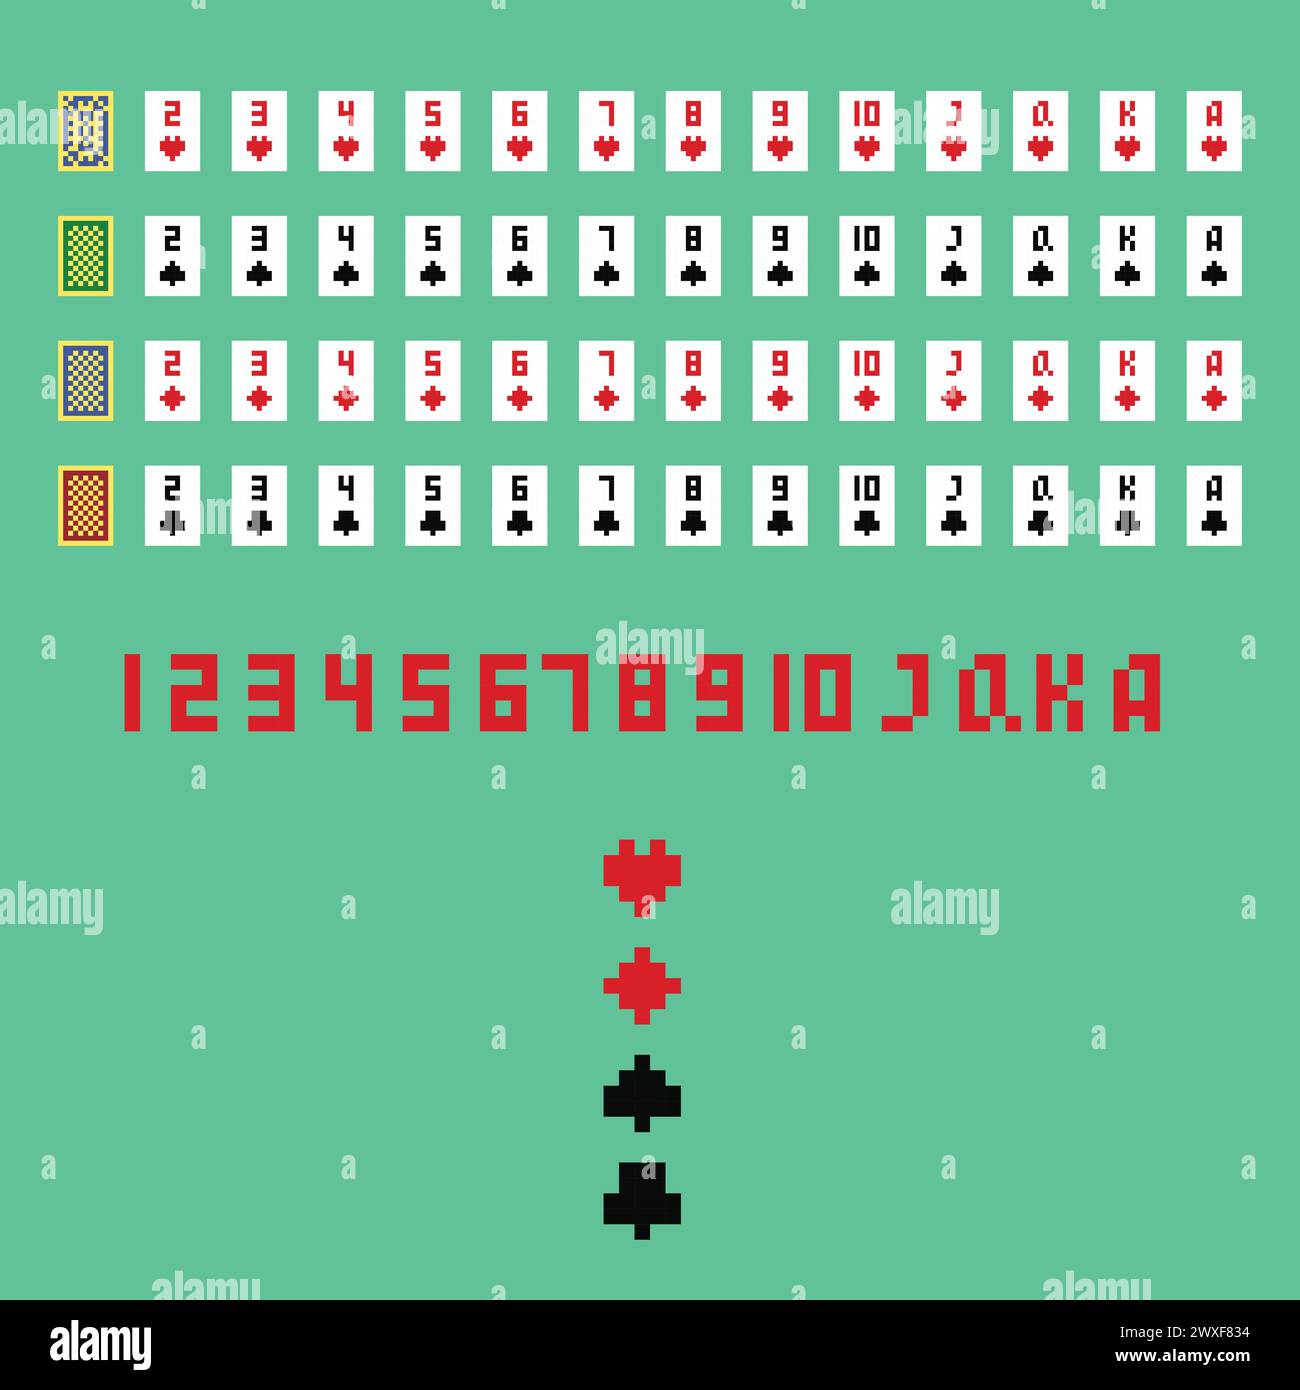 Illustrazione grafica vettoriale dei pixel, risorse per lo sviluppo di giochi di carte: Club, cuori, picche, icone di carte diamanti, schienali delle carte. sviluppo di giochi con pixel art isolati Illustrazione Vettoriale